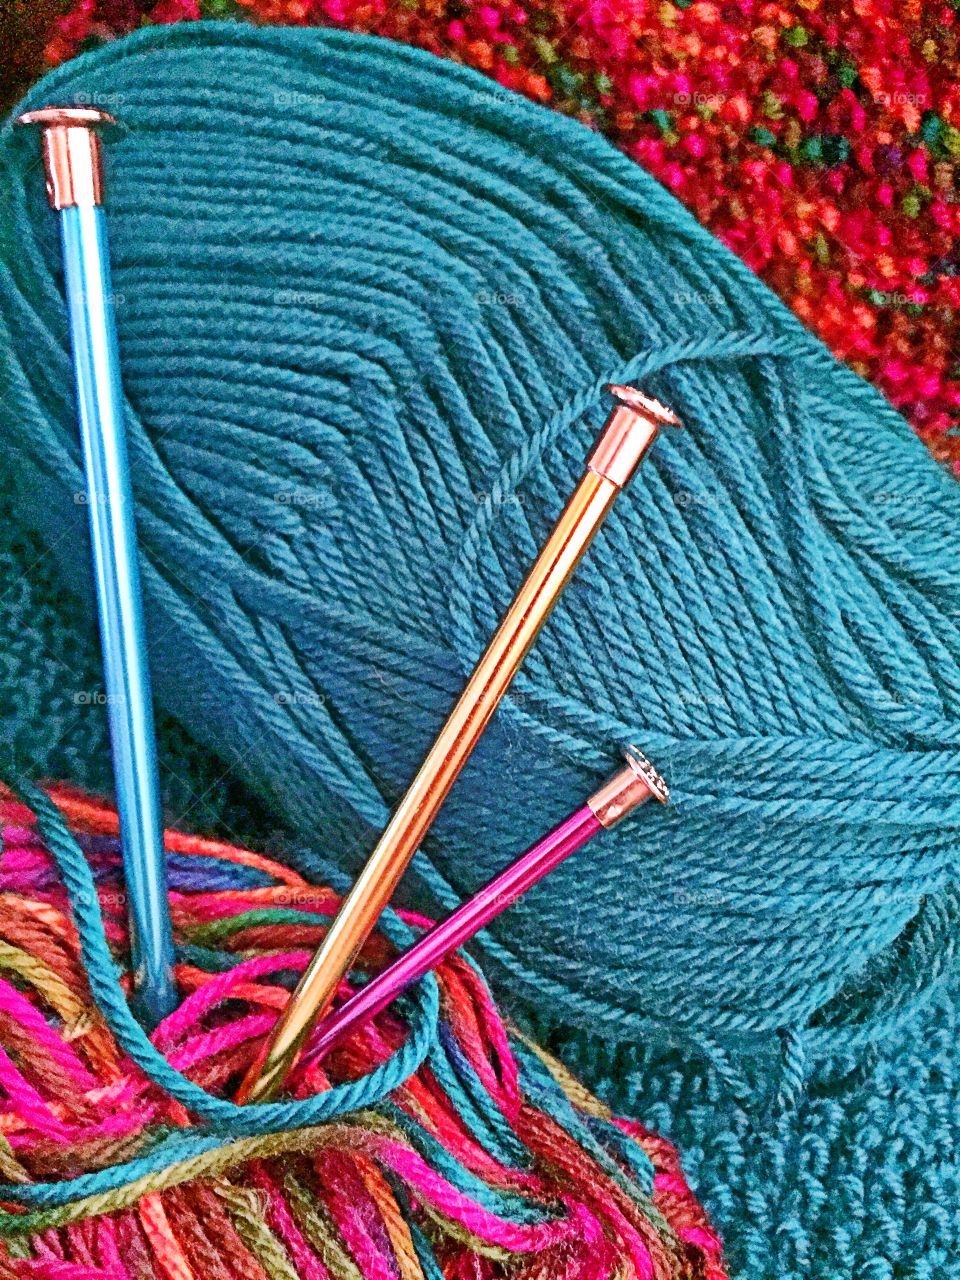 Yarn and knitting needles 